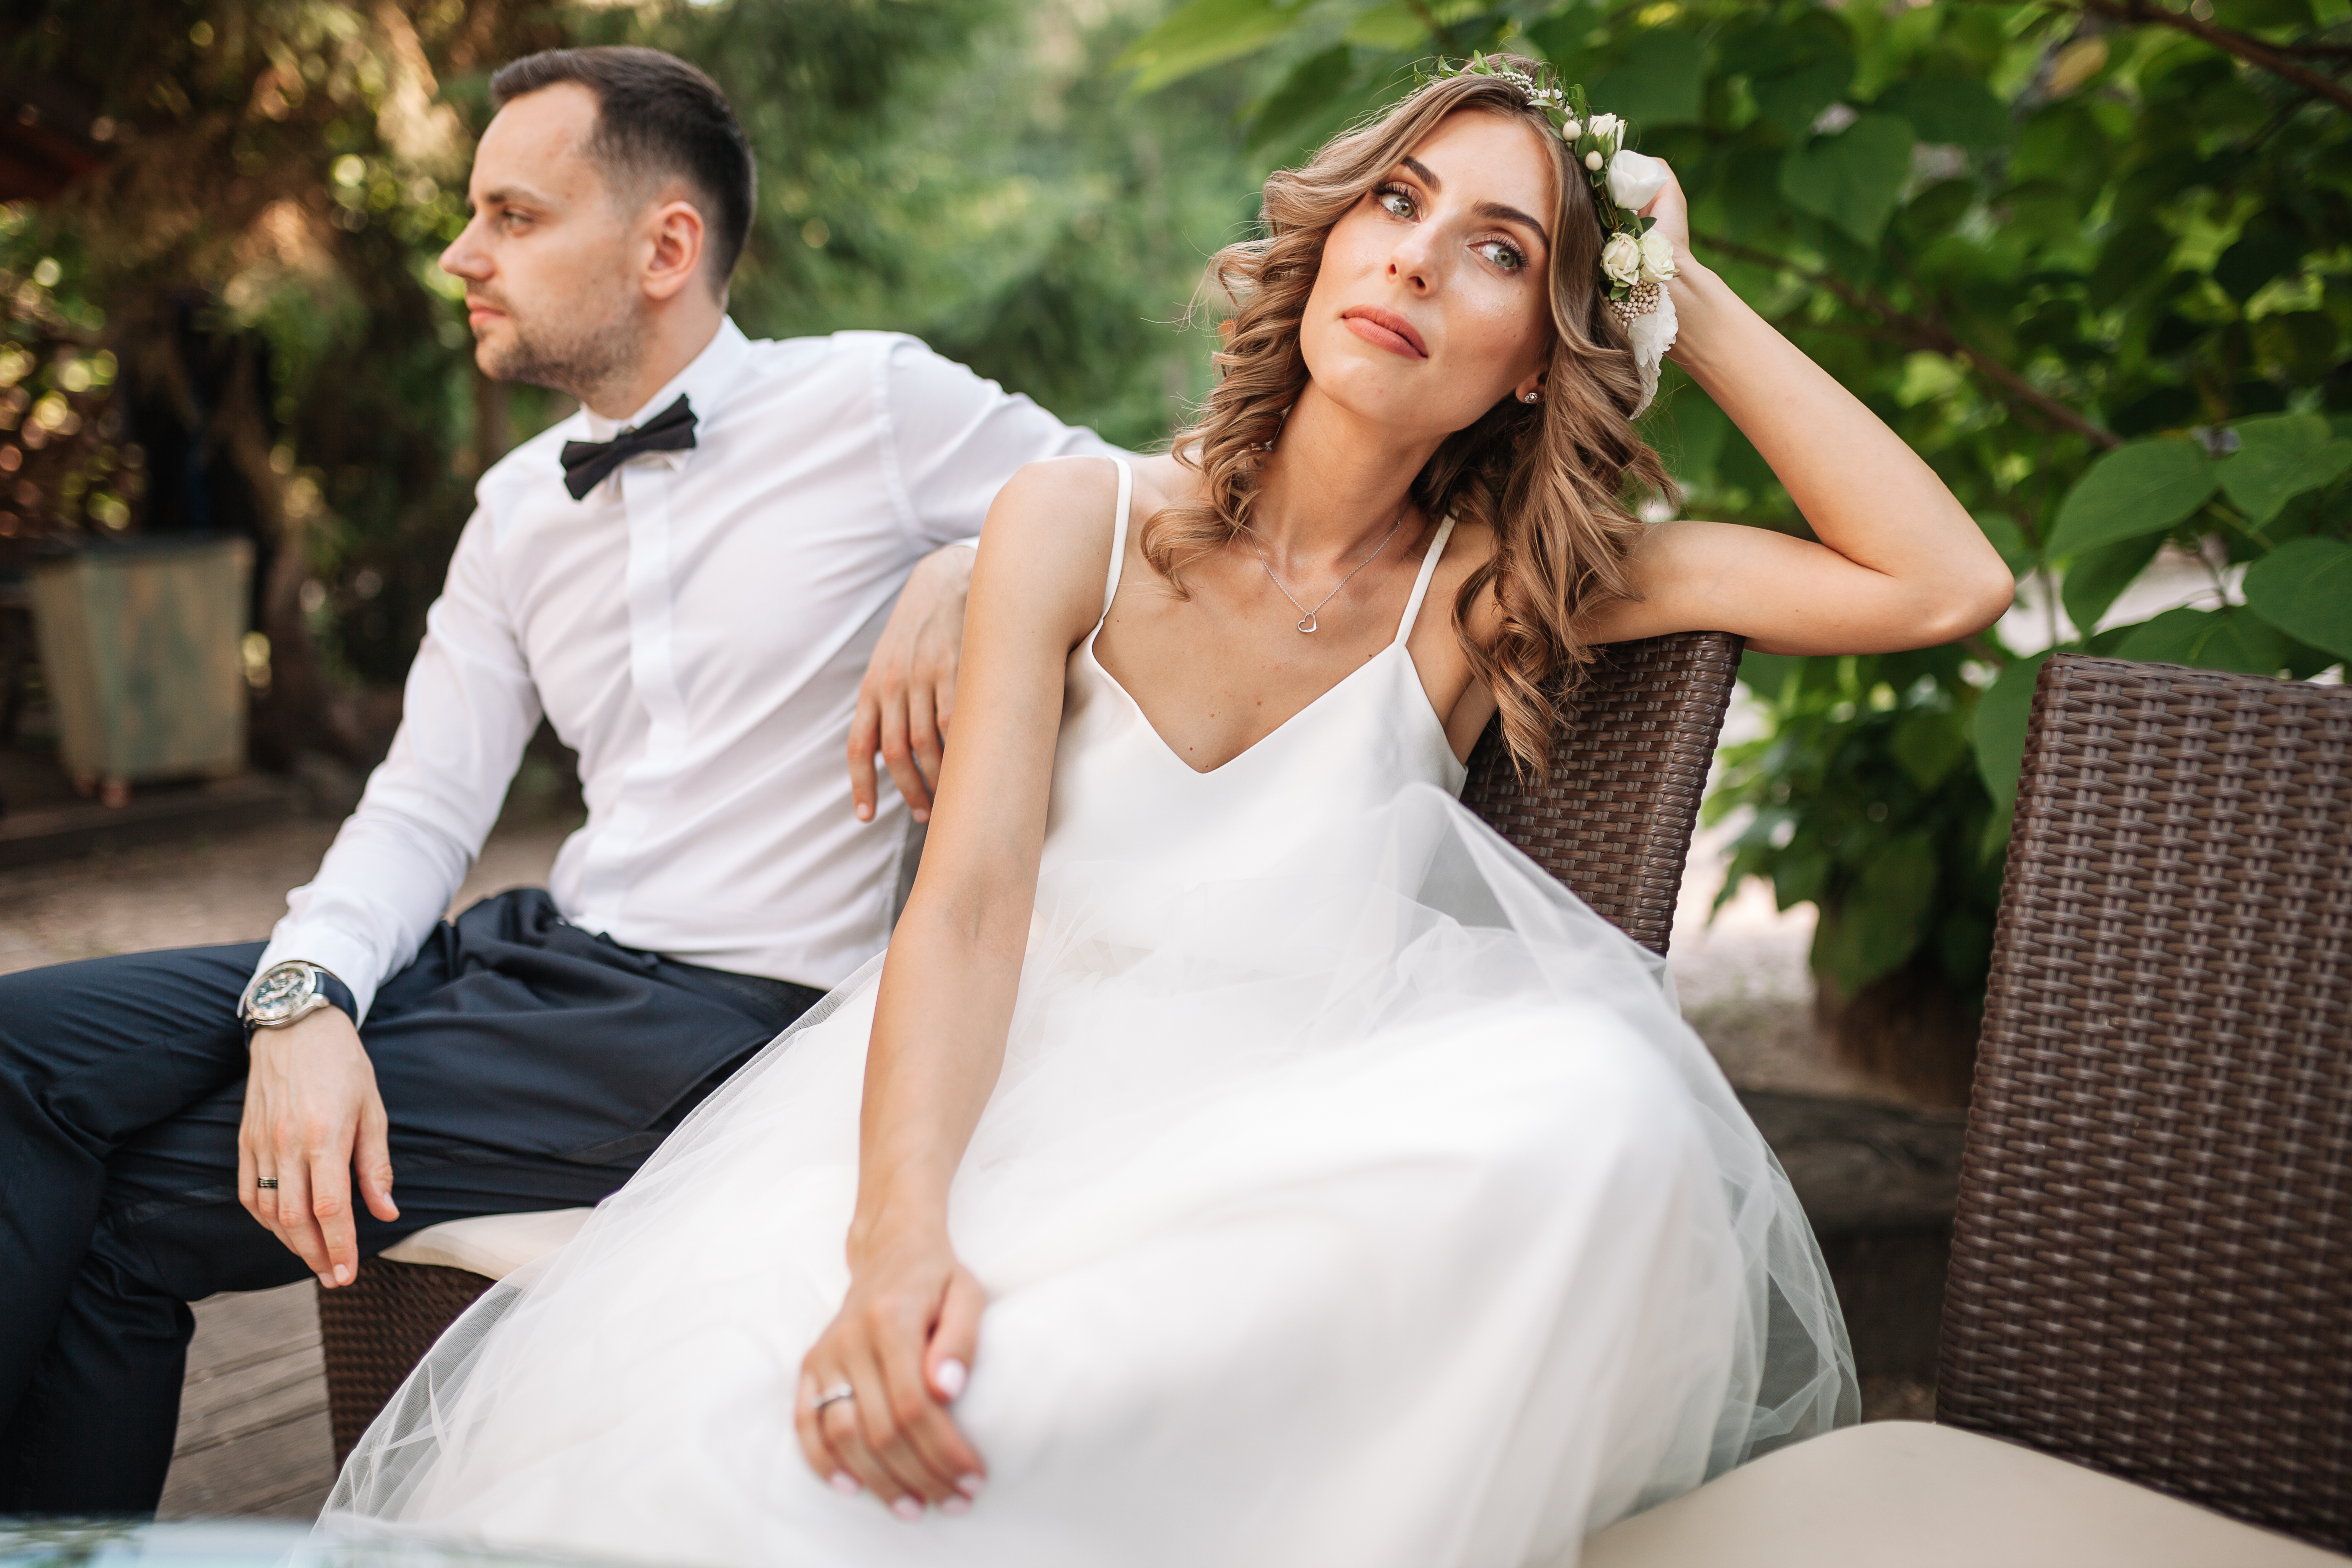 La mariée et le marié contrariés | Source : Shutterstock